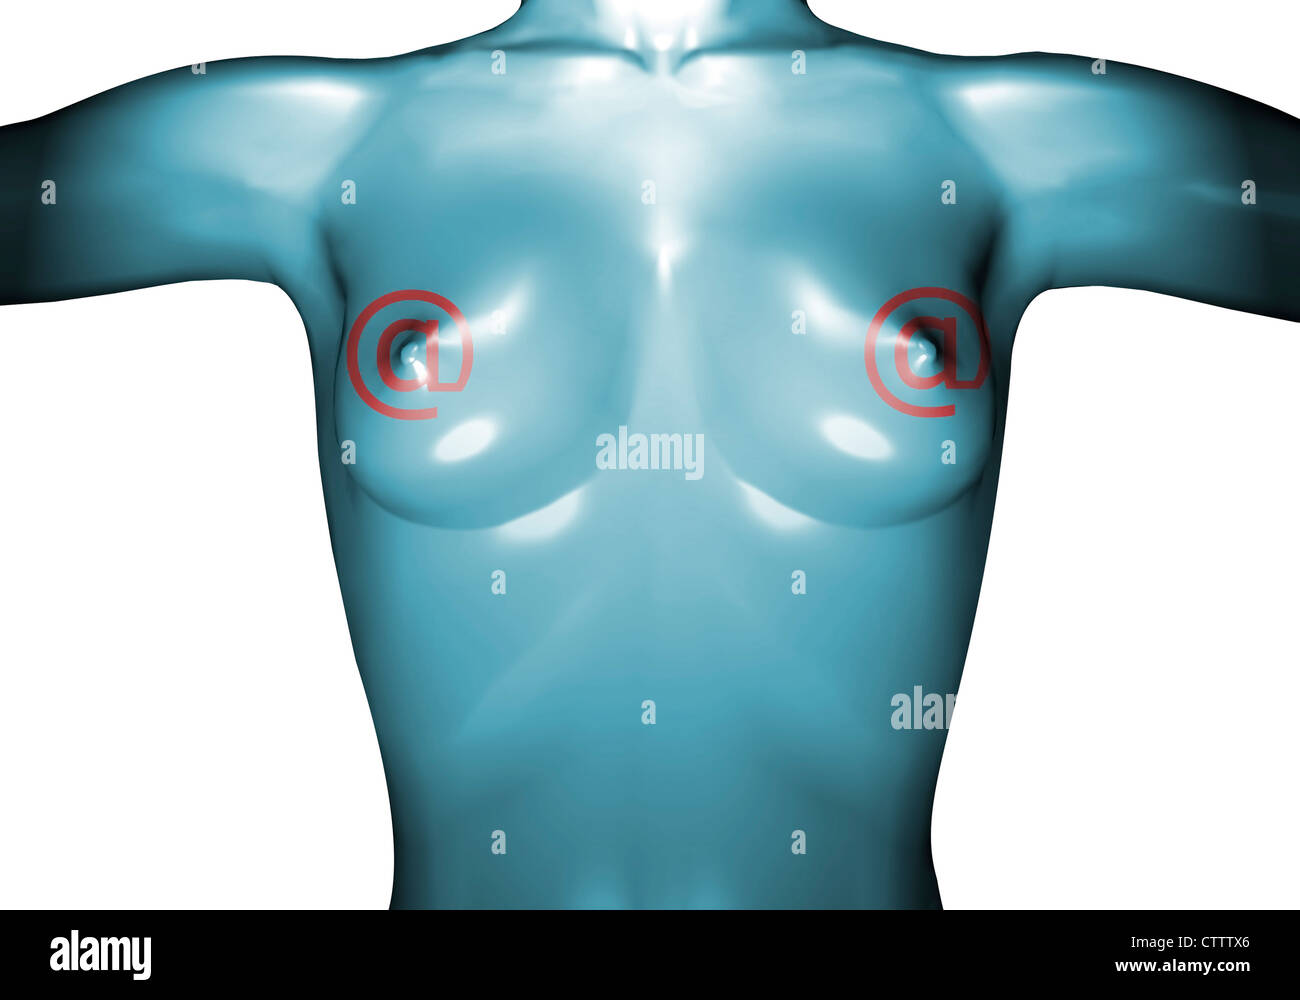 Brust aus Gummi nackter Frauenoberkörper oder Plastik en mit Zeichen Foto de stock